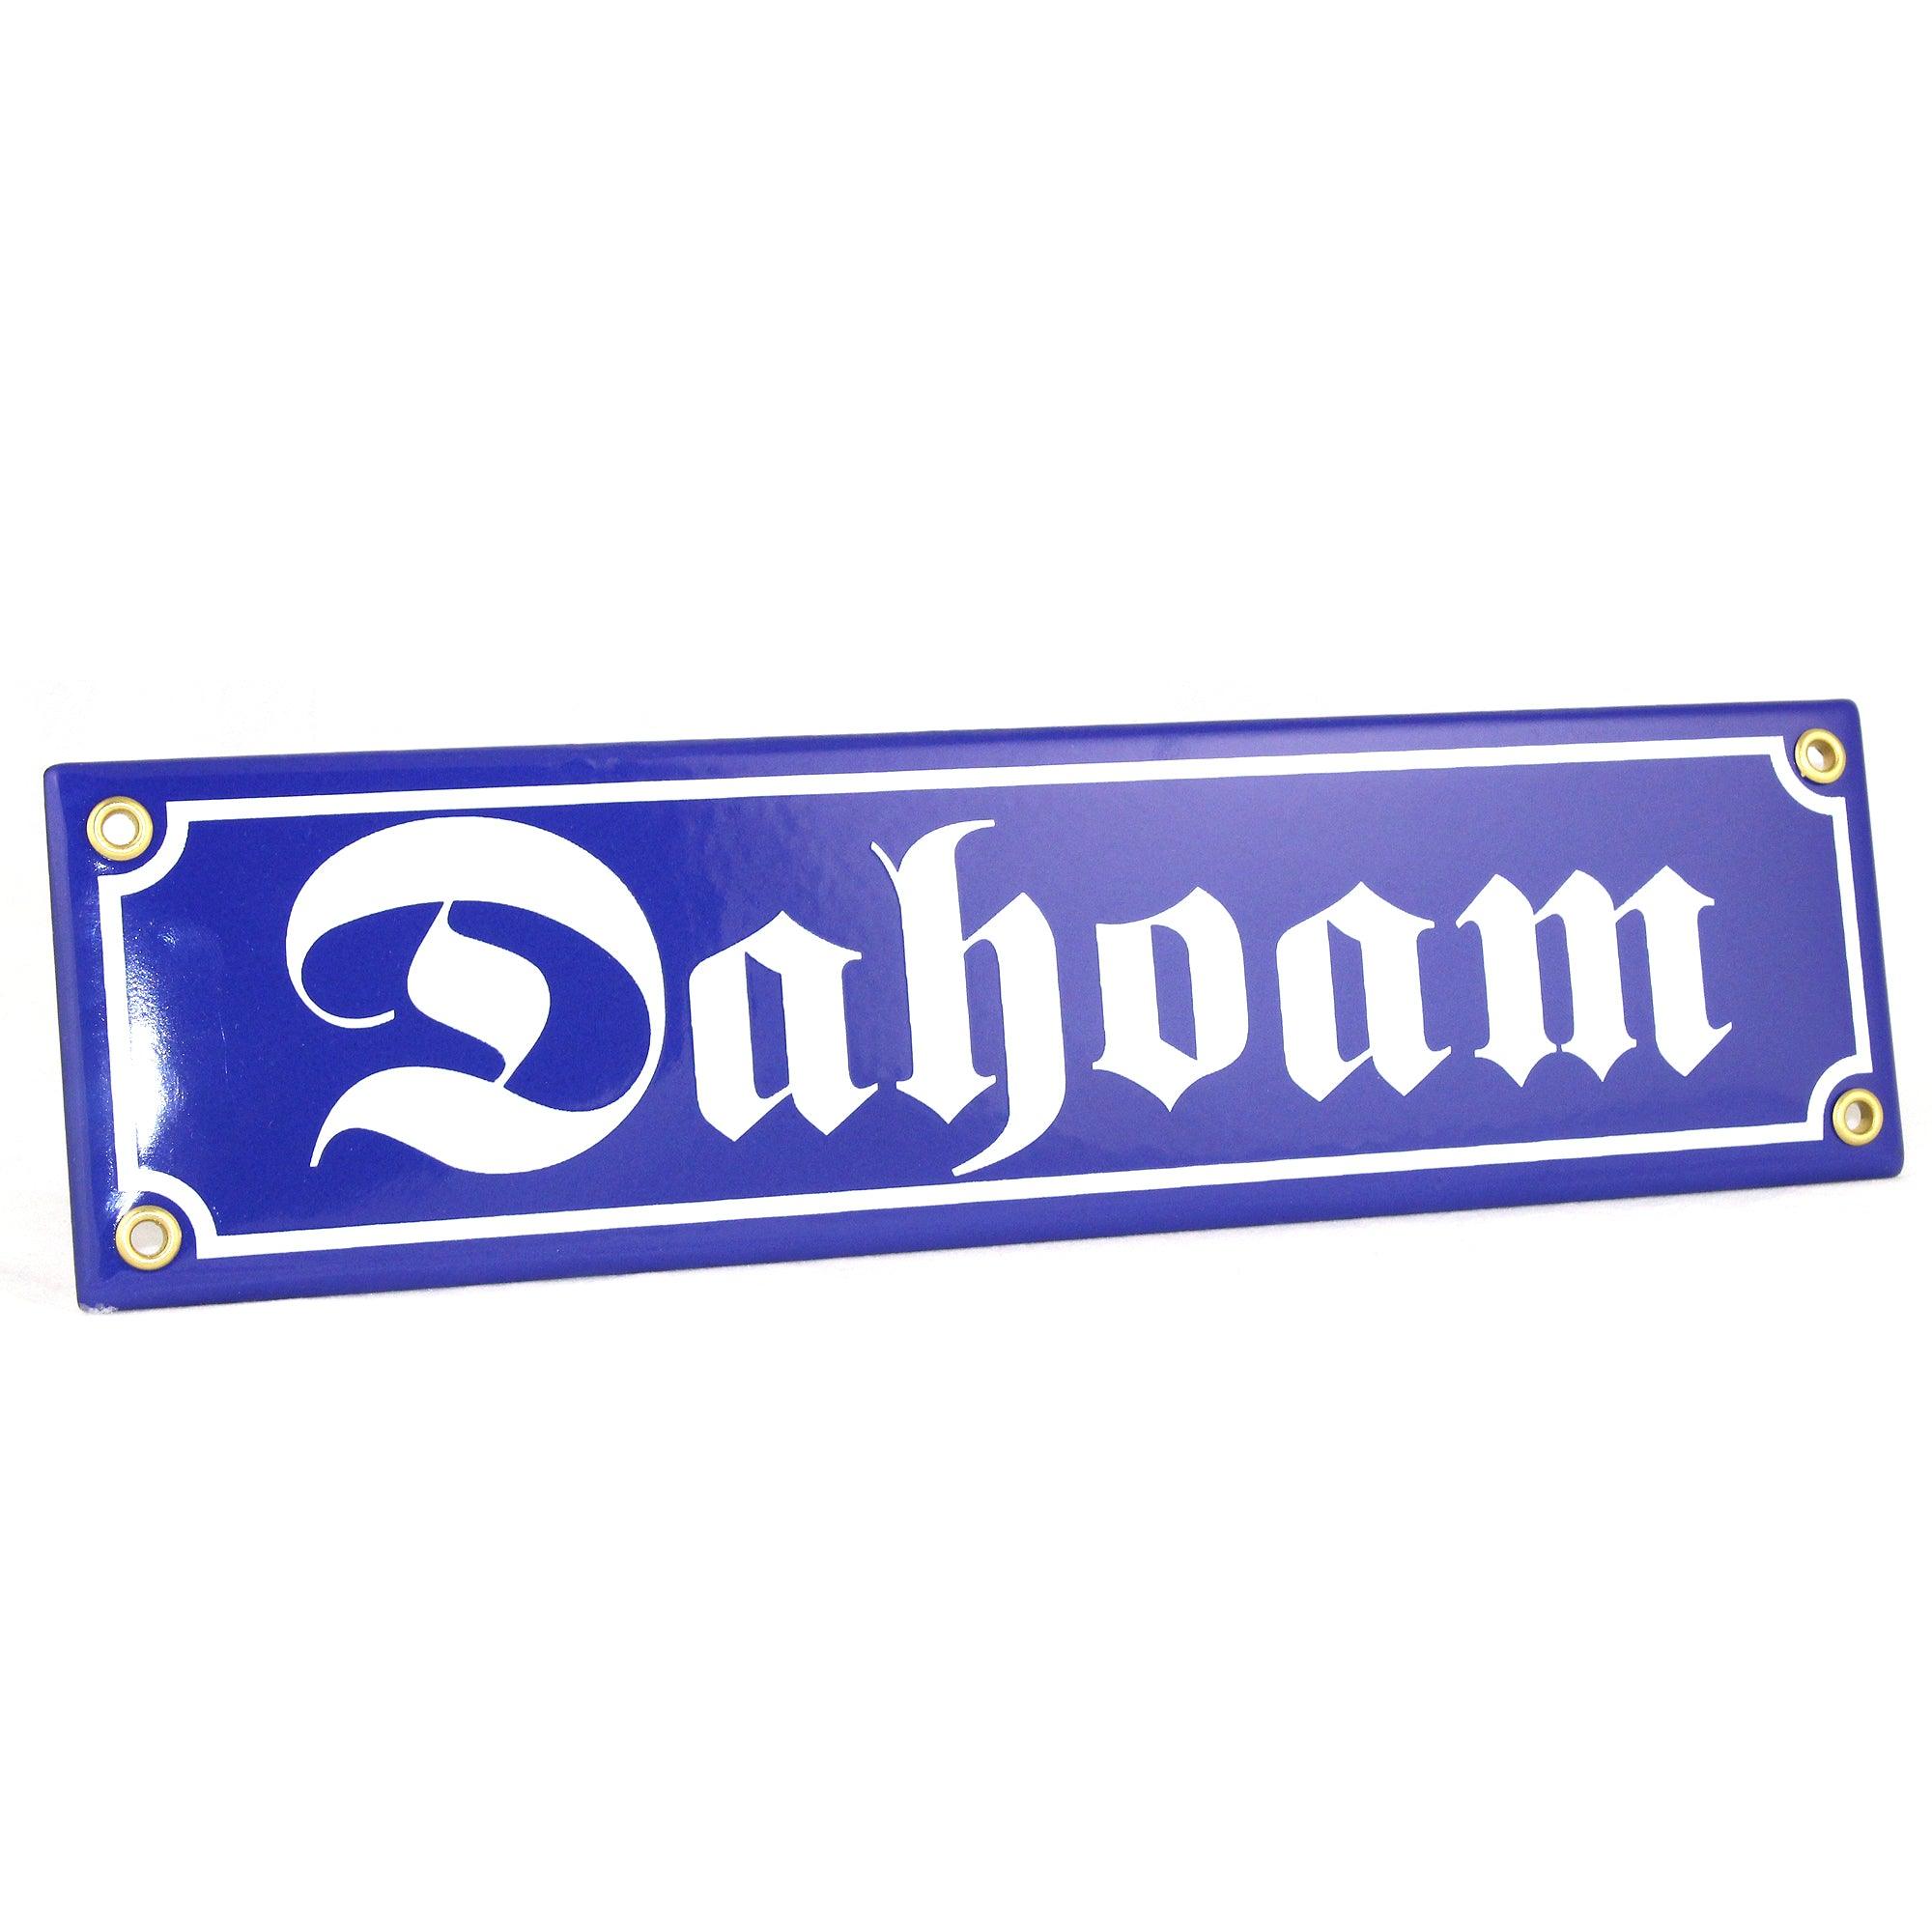 Emaille-Schild "Dahoam" - bavariashop - mei LebensGfui